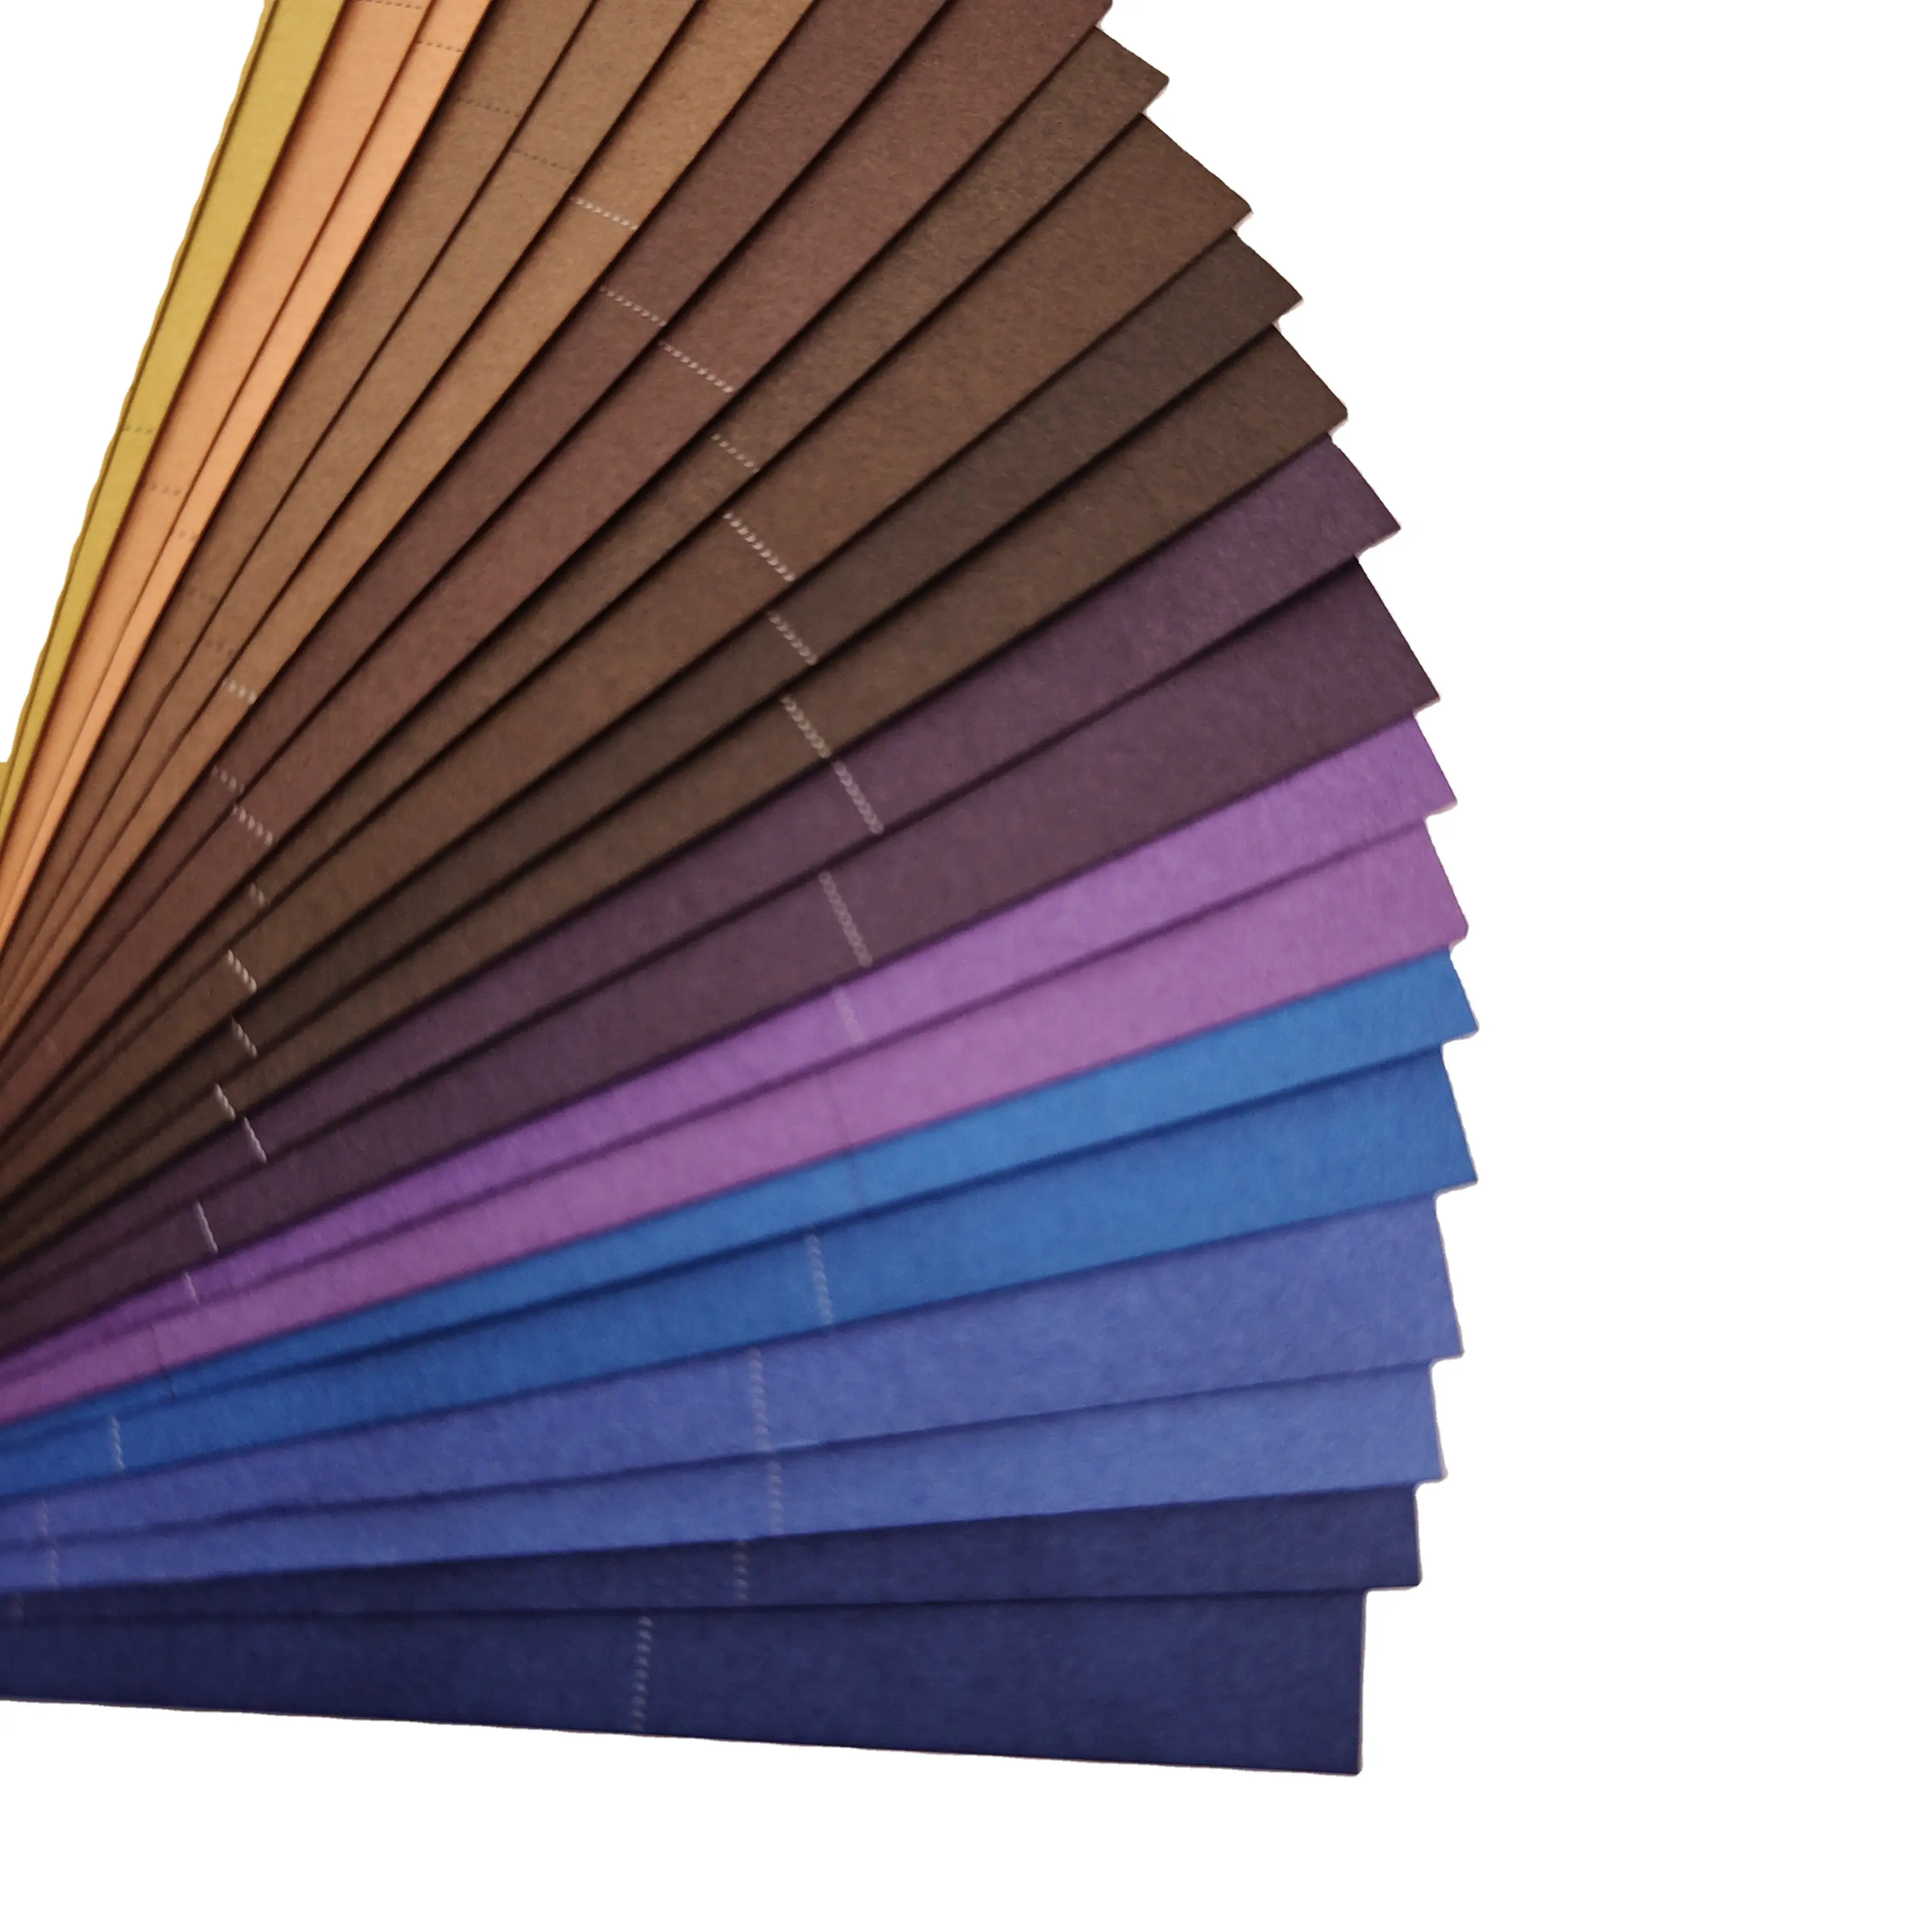 กระดาษสีเยื่อไม้คุณภาพสูงเป็นมิตรกับสิ่งแวดล้อมและกระดาษห่อมืออาชีพขนาด 118g และ 256g สามารถรีไซเคิลได้